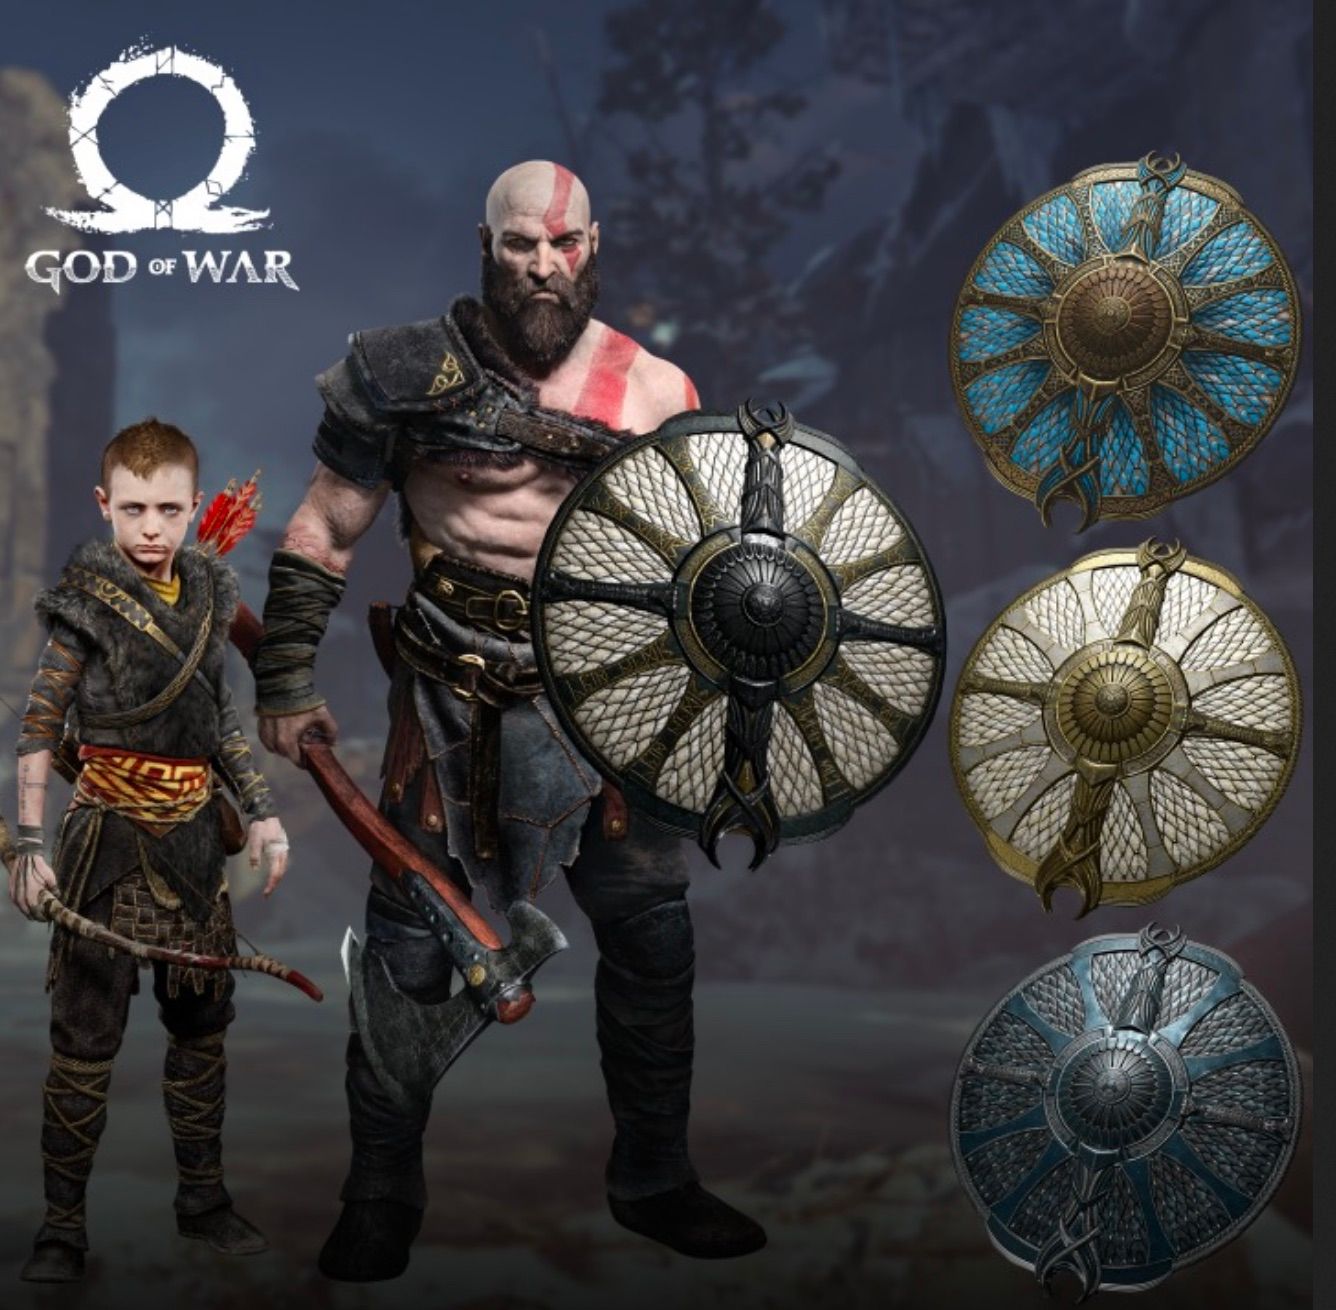 God of War pre-order bonuses